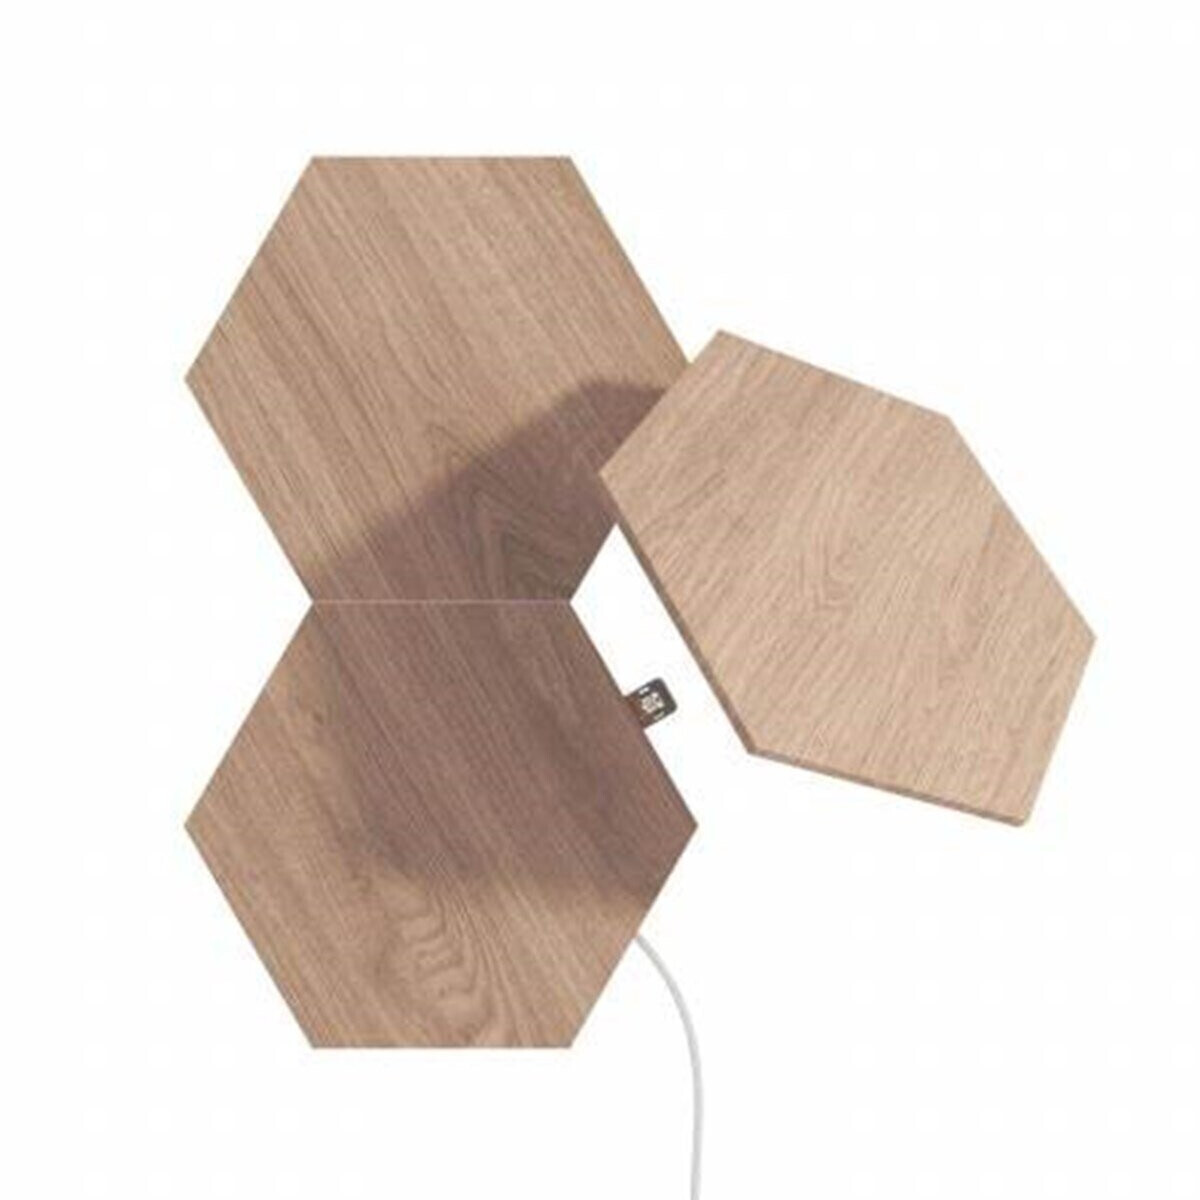 € Look ab Preisvergleich Licht-Panele 59,99 Elements 3 Wood Hexagons bei (NL52-E-0001HB-3PK) Nanoleaf Erweiterungsset |